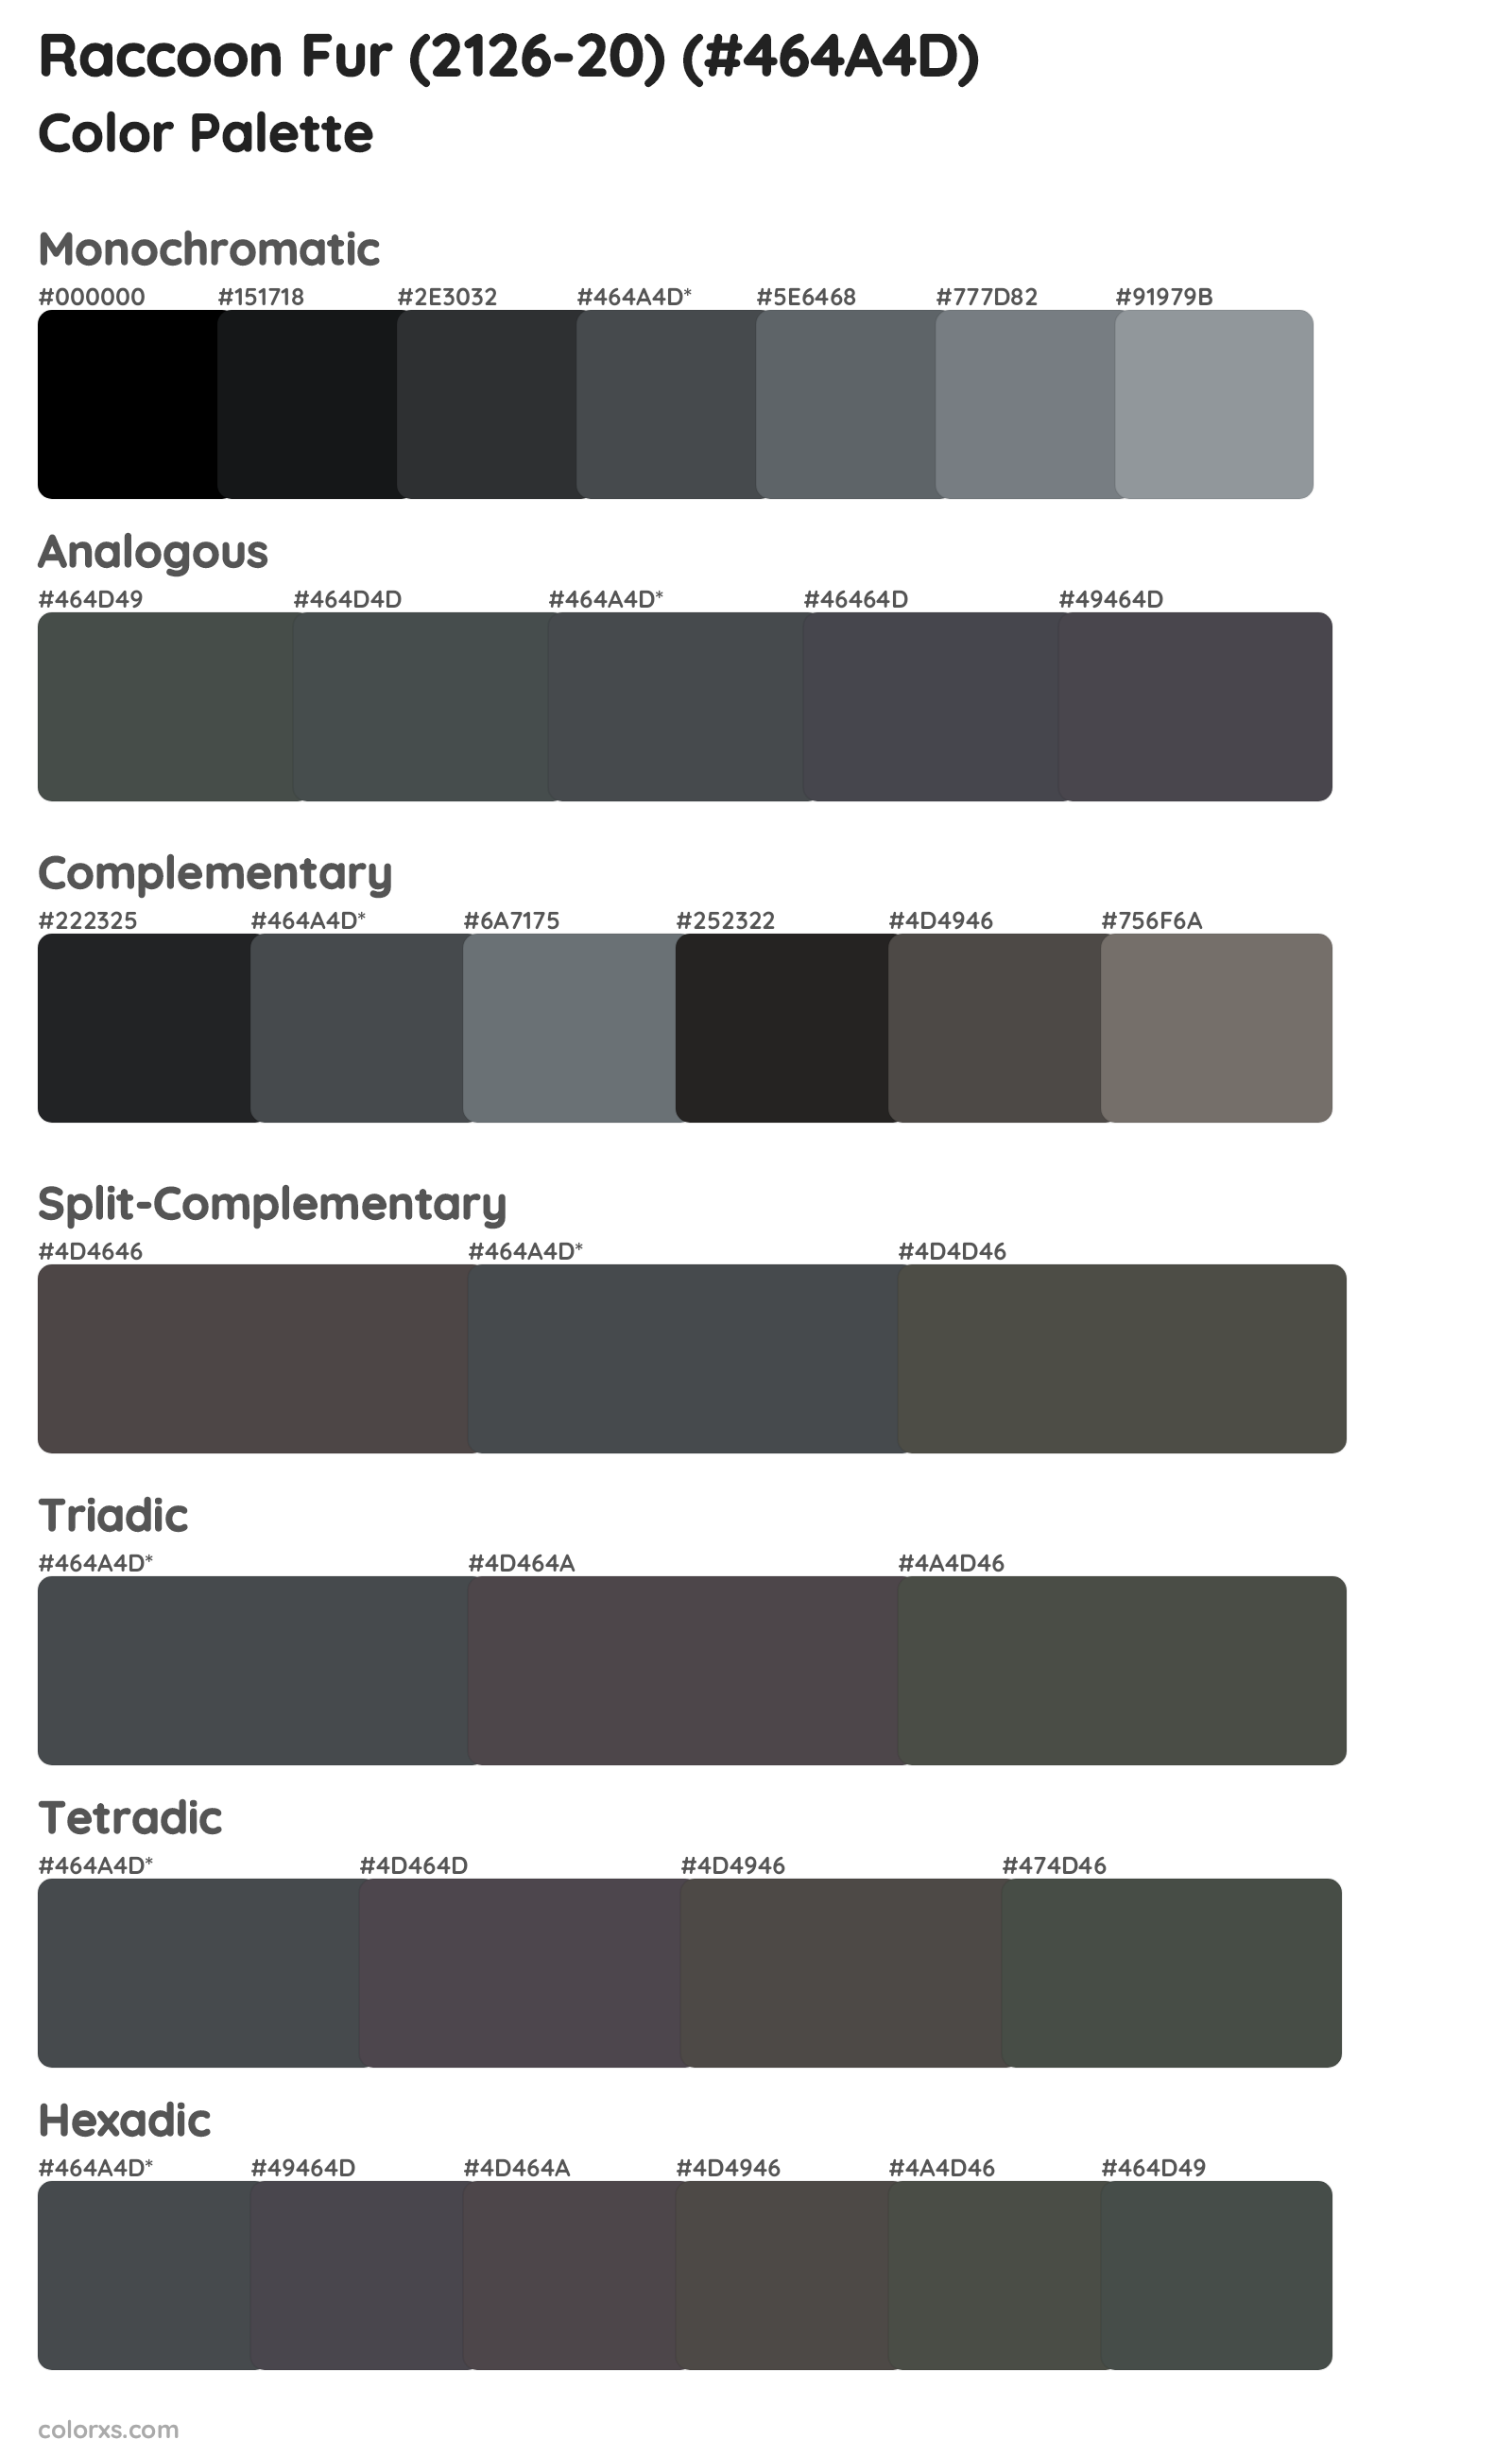 Raccoon Fur (2126-20) Color Scheme Palettes